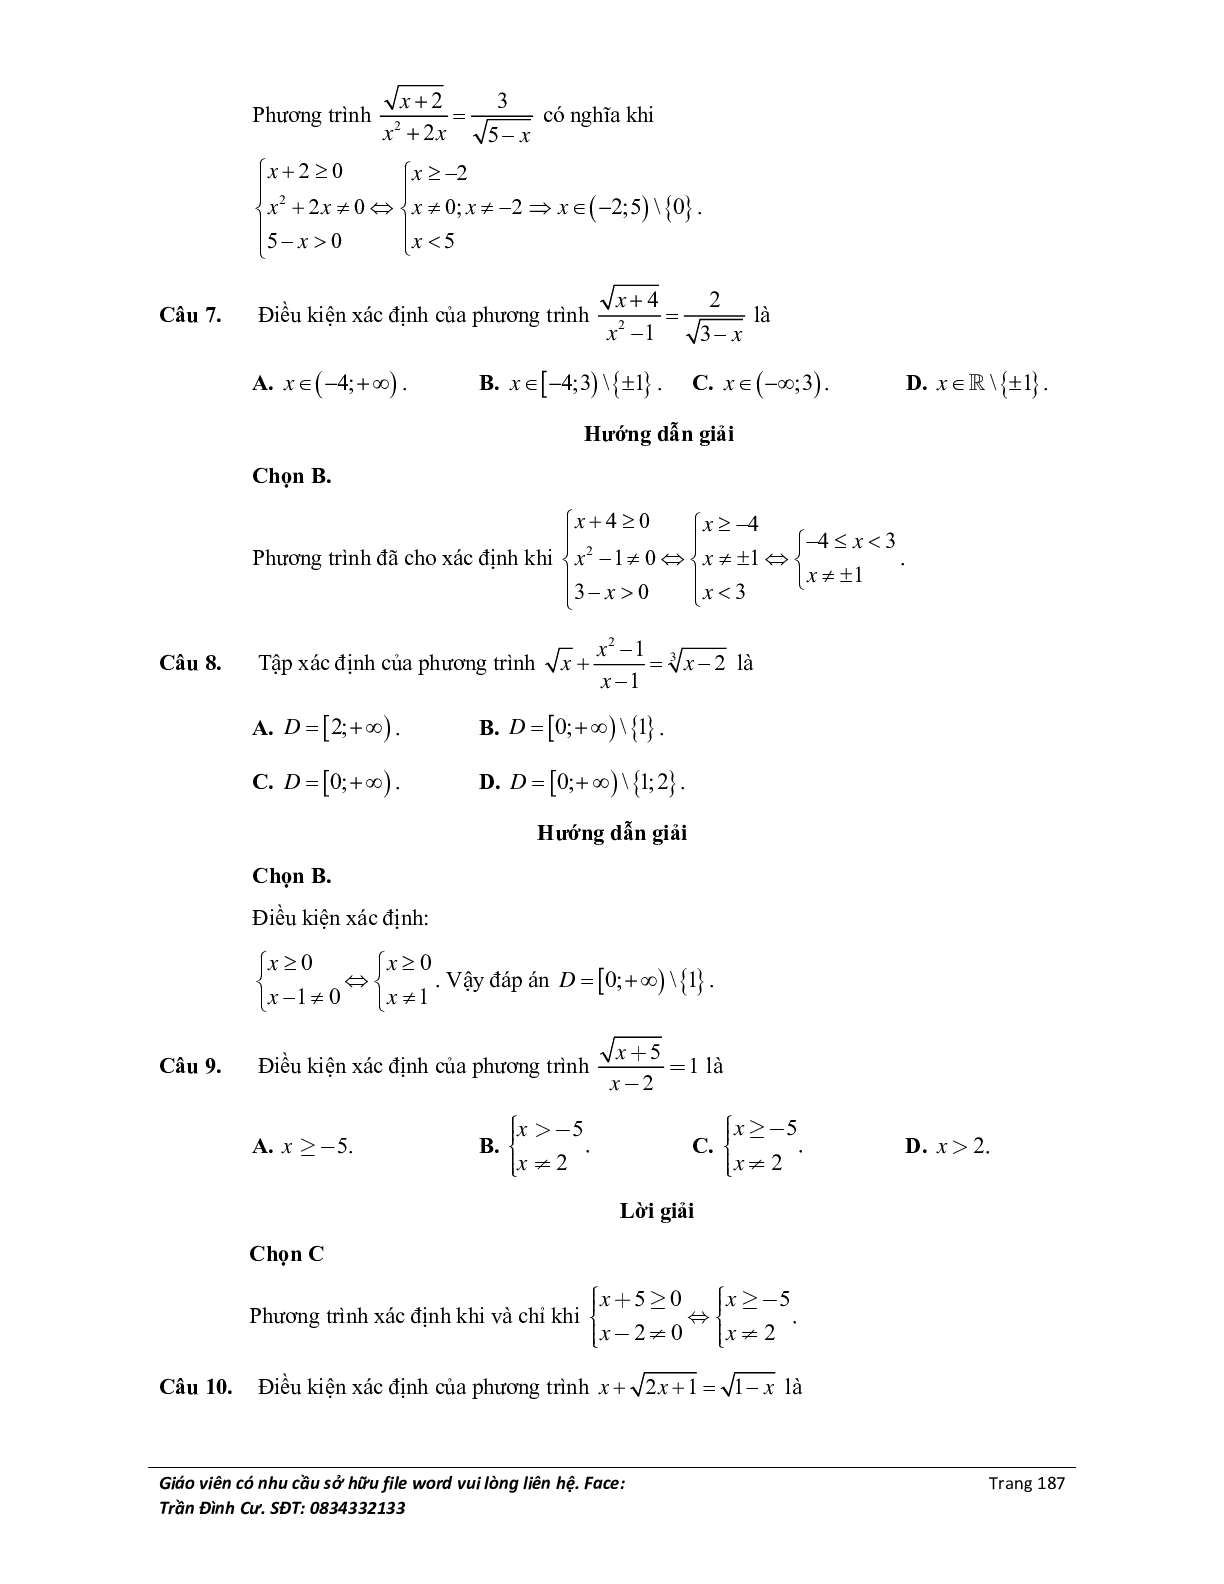 Đại cương về phương trình môn Toán lớp 10 (trang 5)